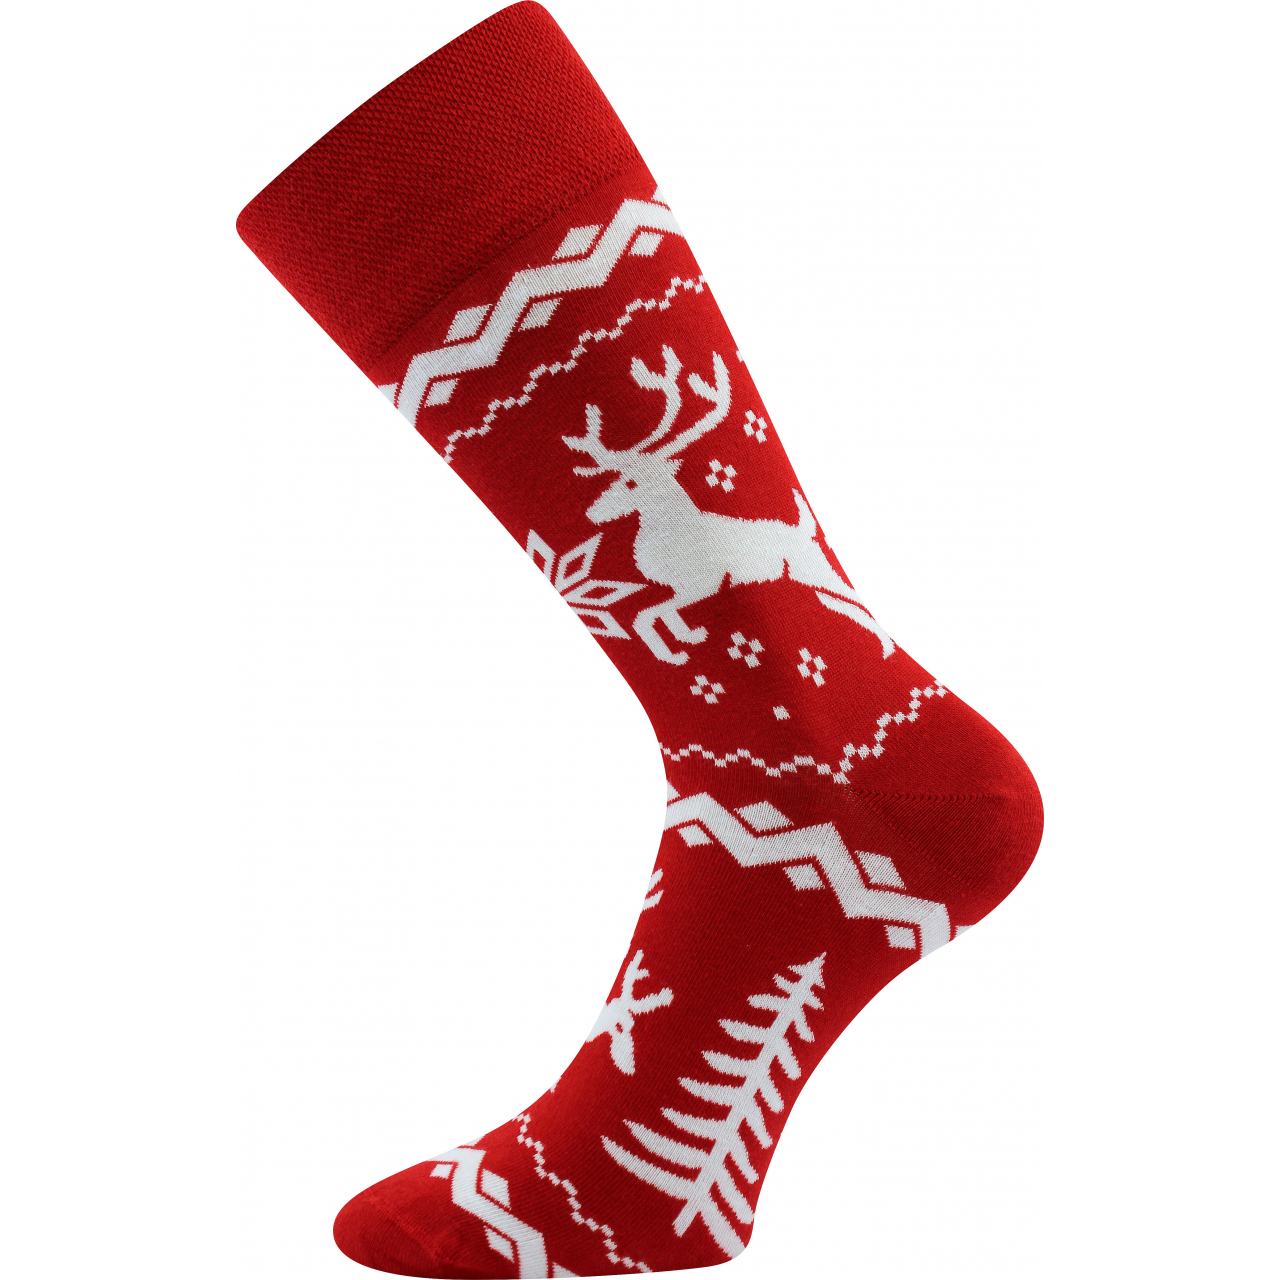 Ponožky společenské unisex Lonka Twidor Vánoce - červené-bílé, 43-46